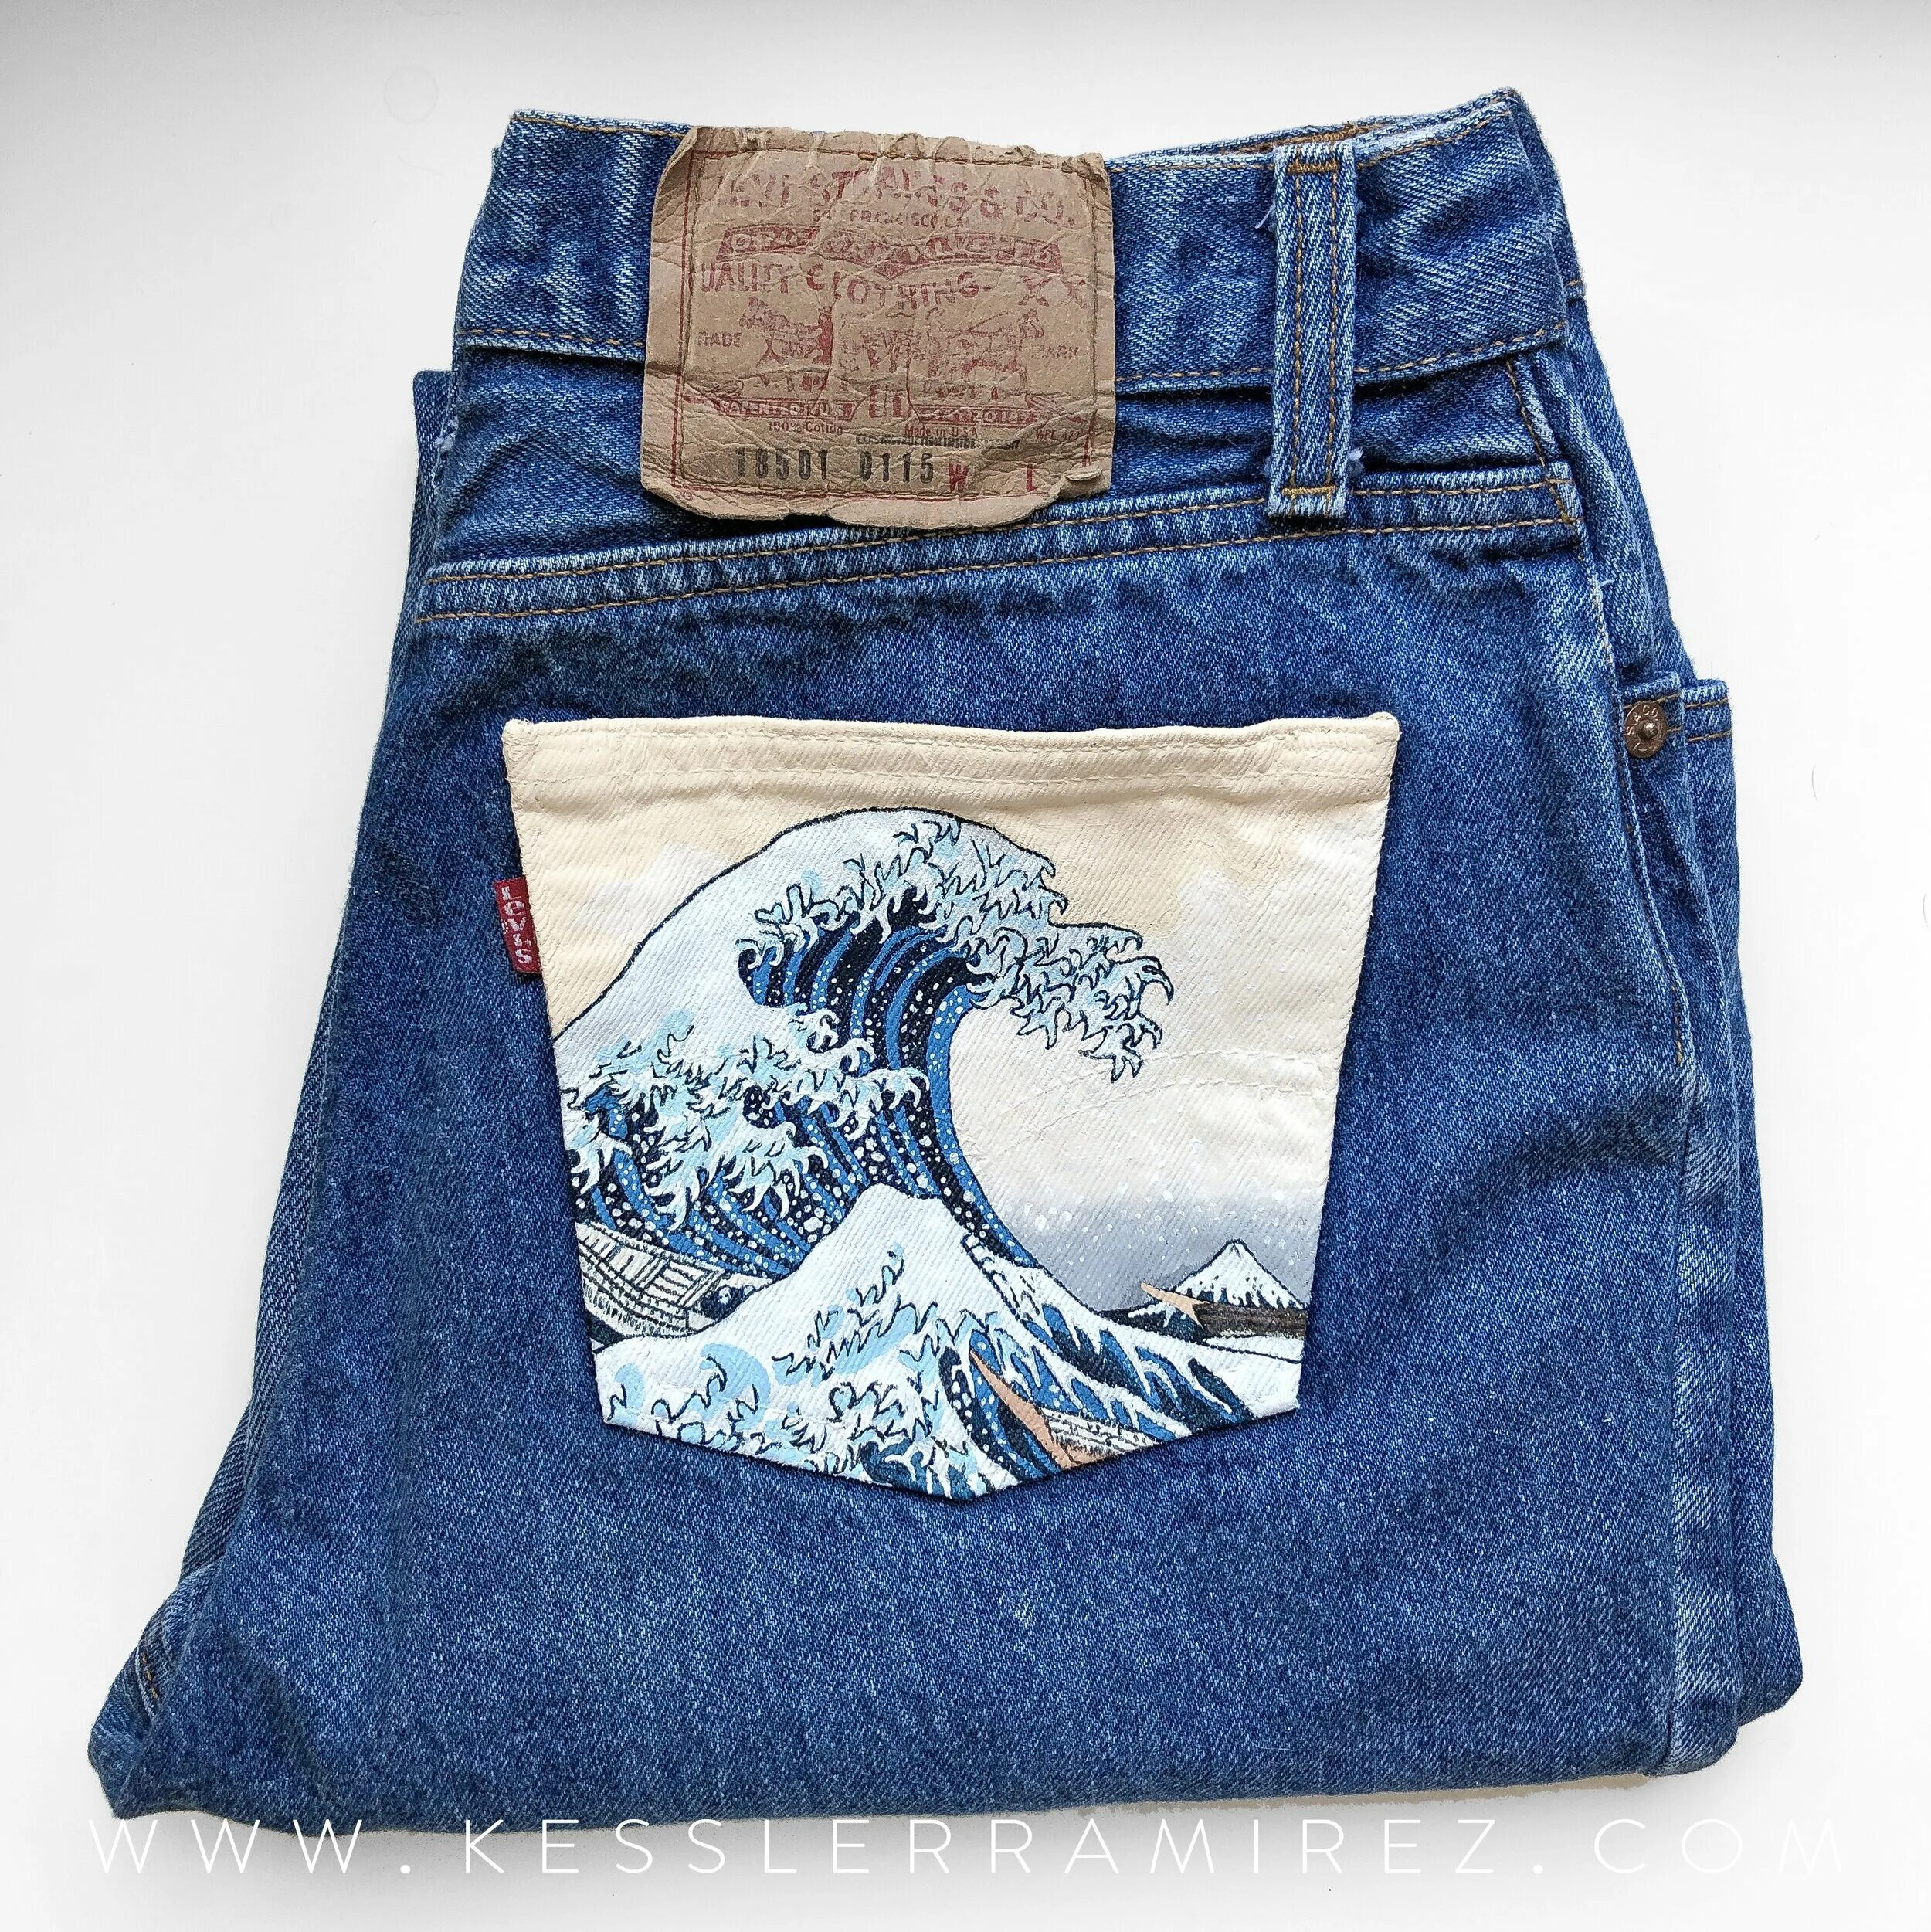 Расписные джинсы. Роспись на джинсах. Разрисованные карманы джинс. Рисование на карманах джинс. Карман джинсов рисунок